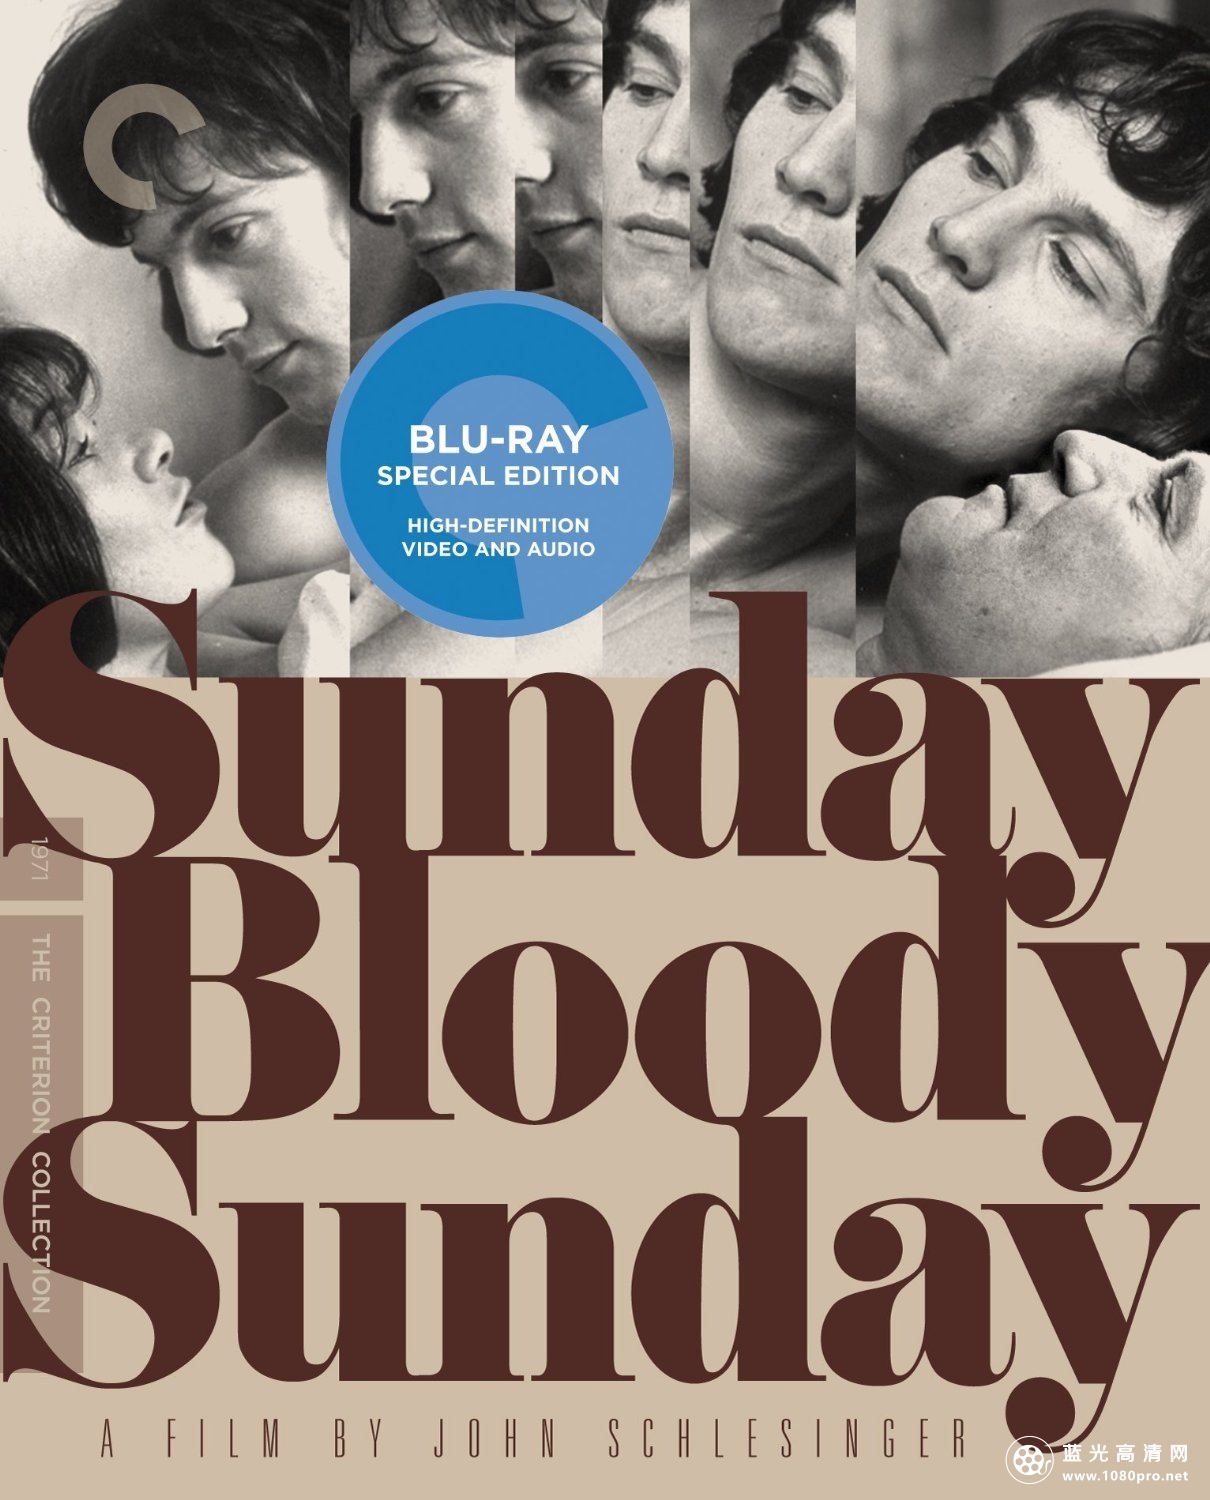 血腥星期天 Sunday.Bloody.Sunday.1971.720p.BluRay.x264-HD4U 4.37G-1.jpg